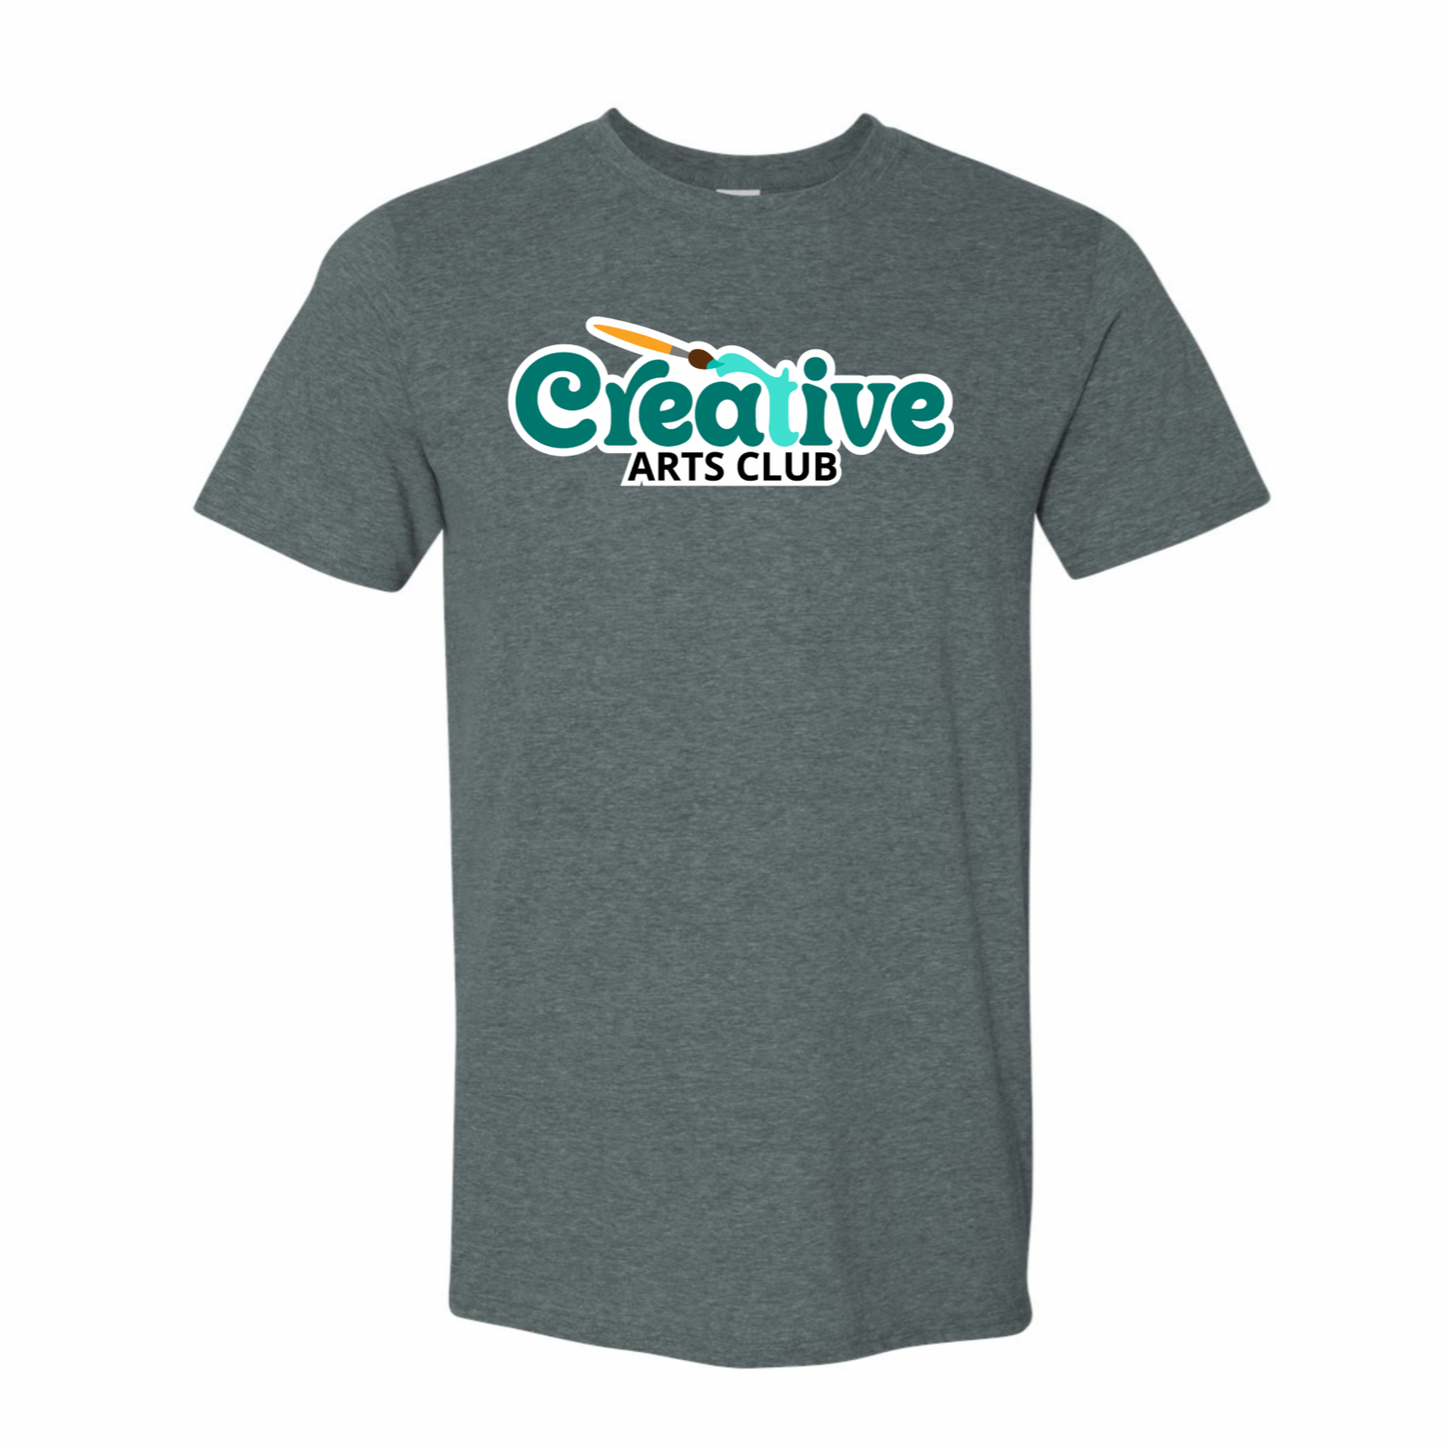 Creative Arts Club T-shirt